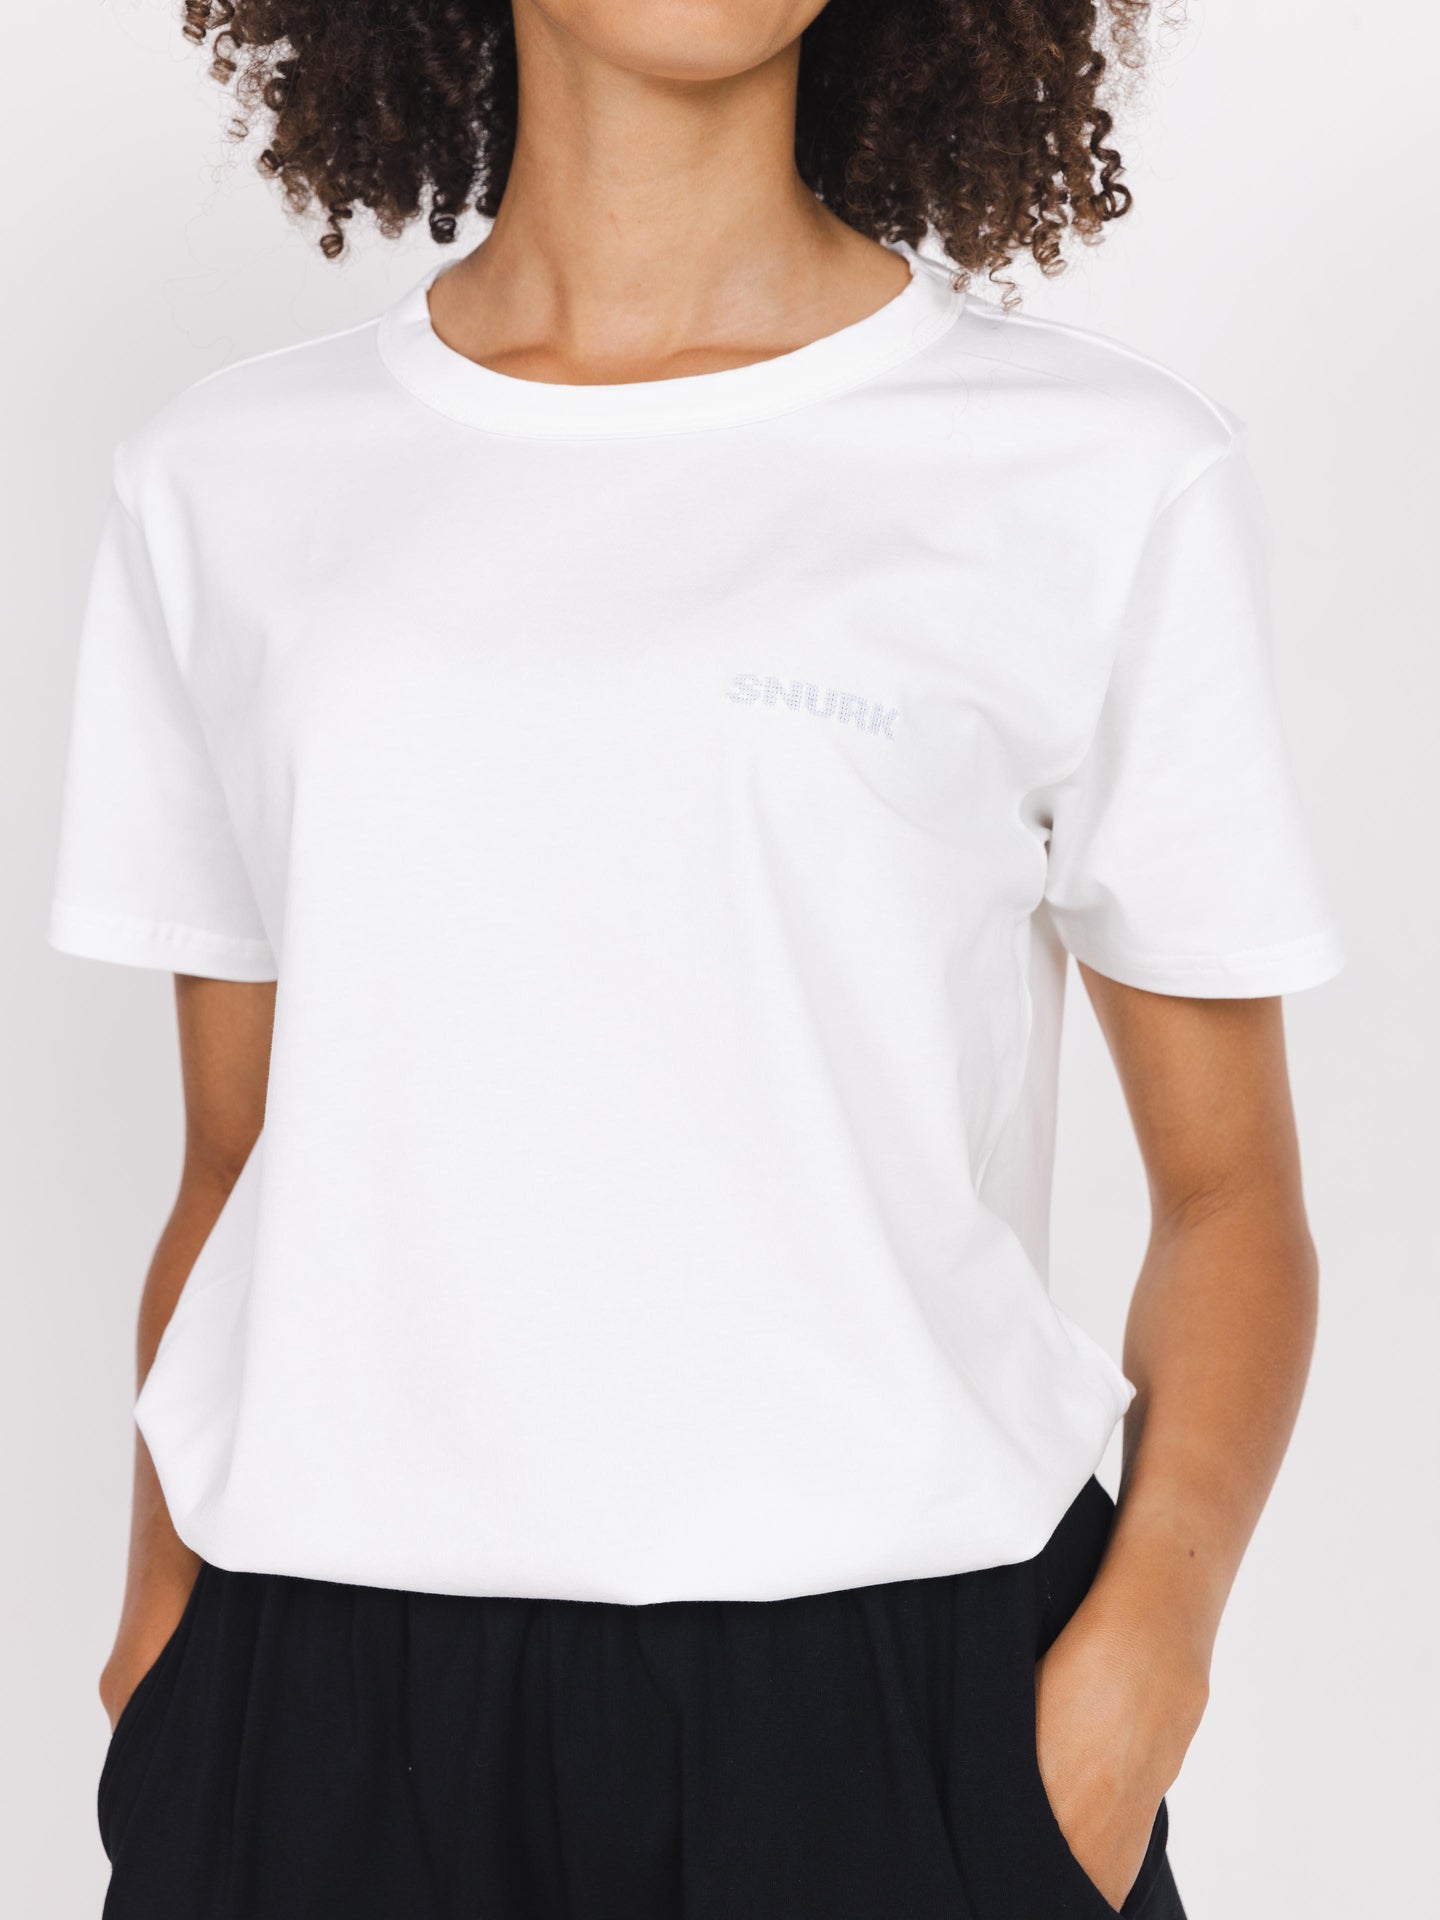 White T-shirt Unisex - SNURK